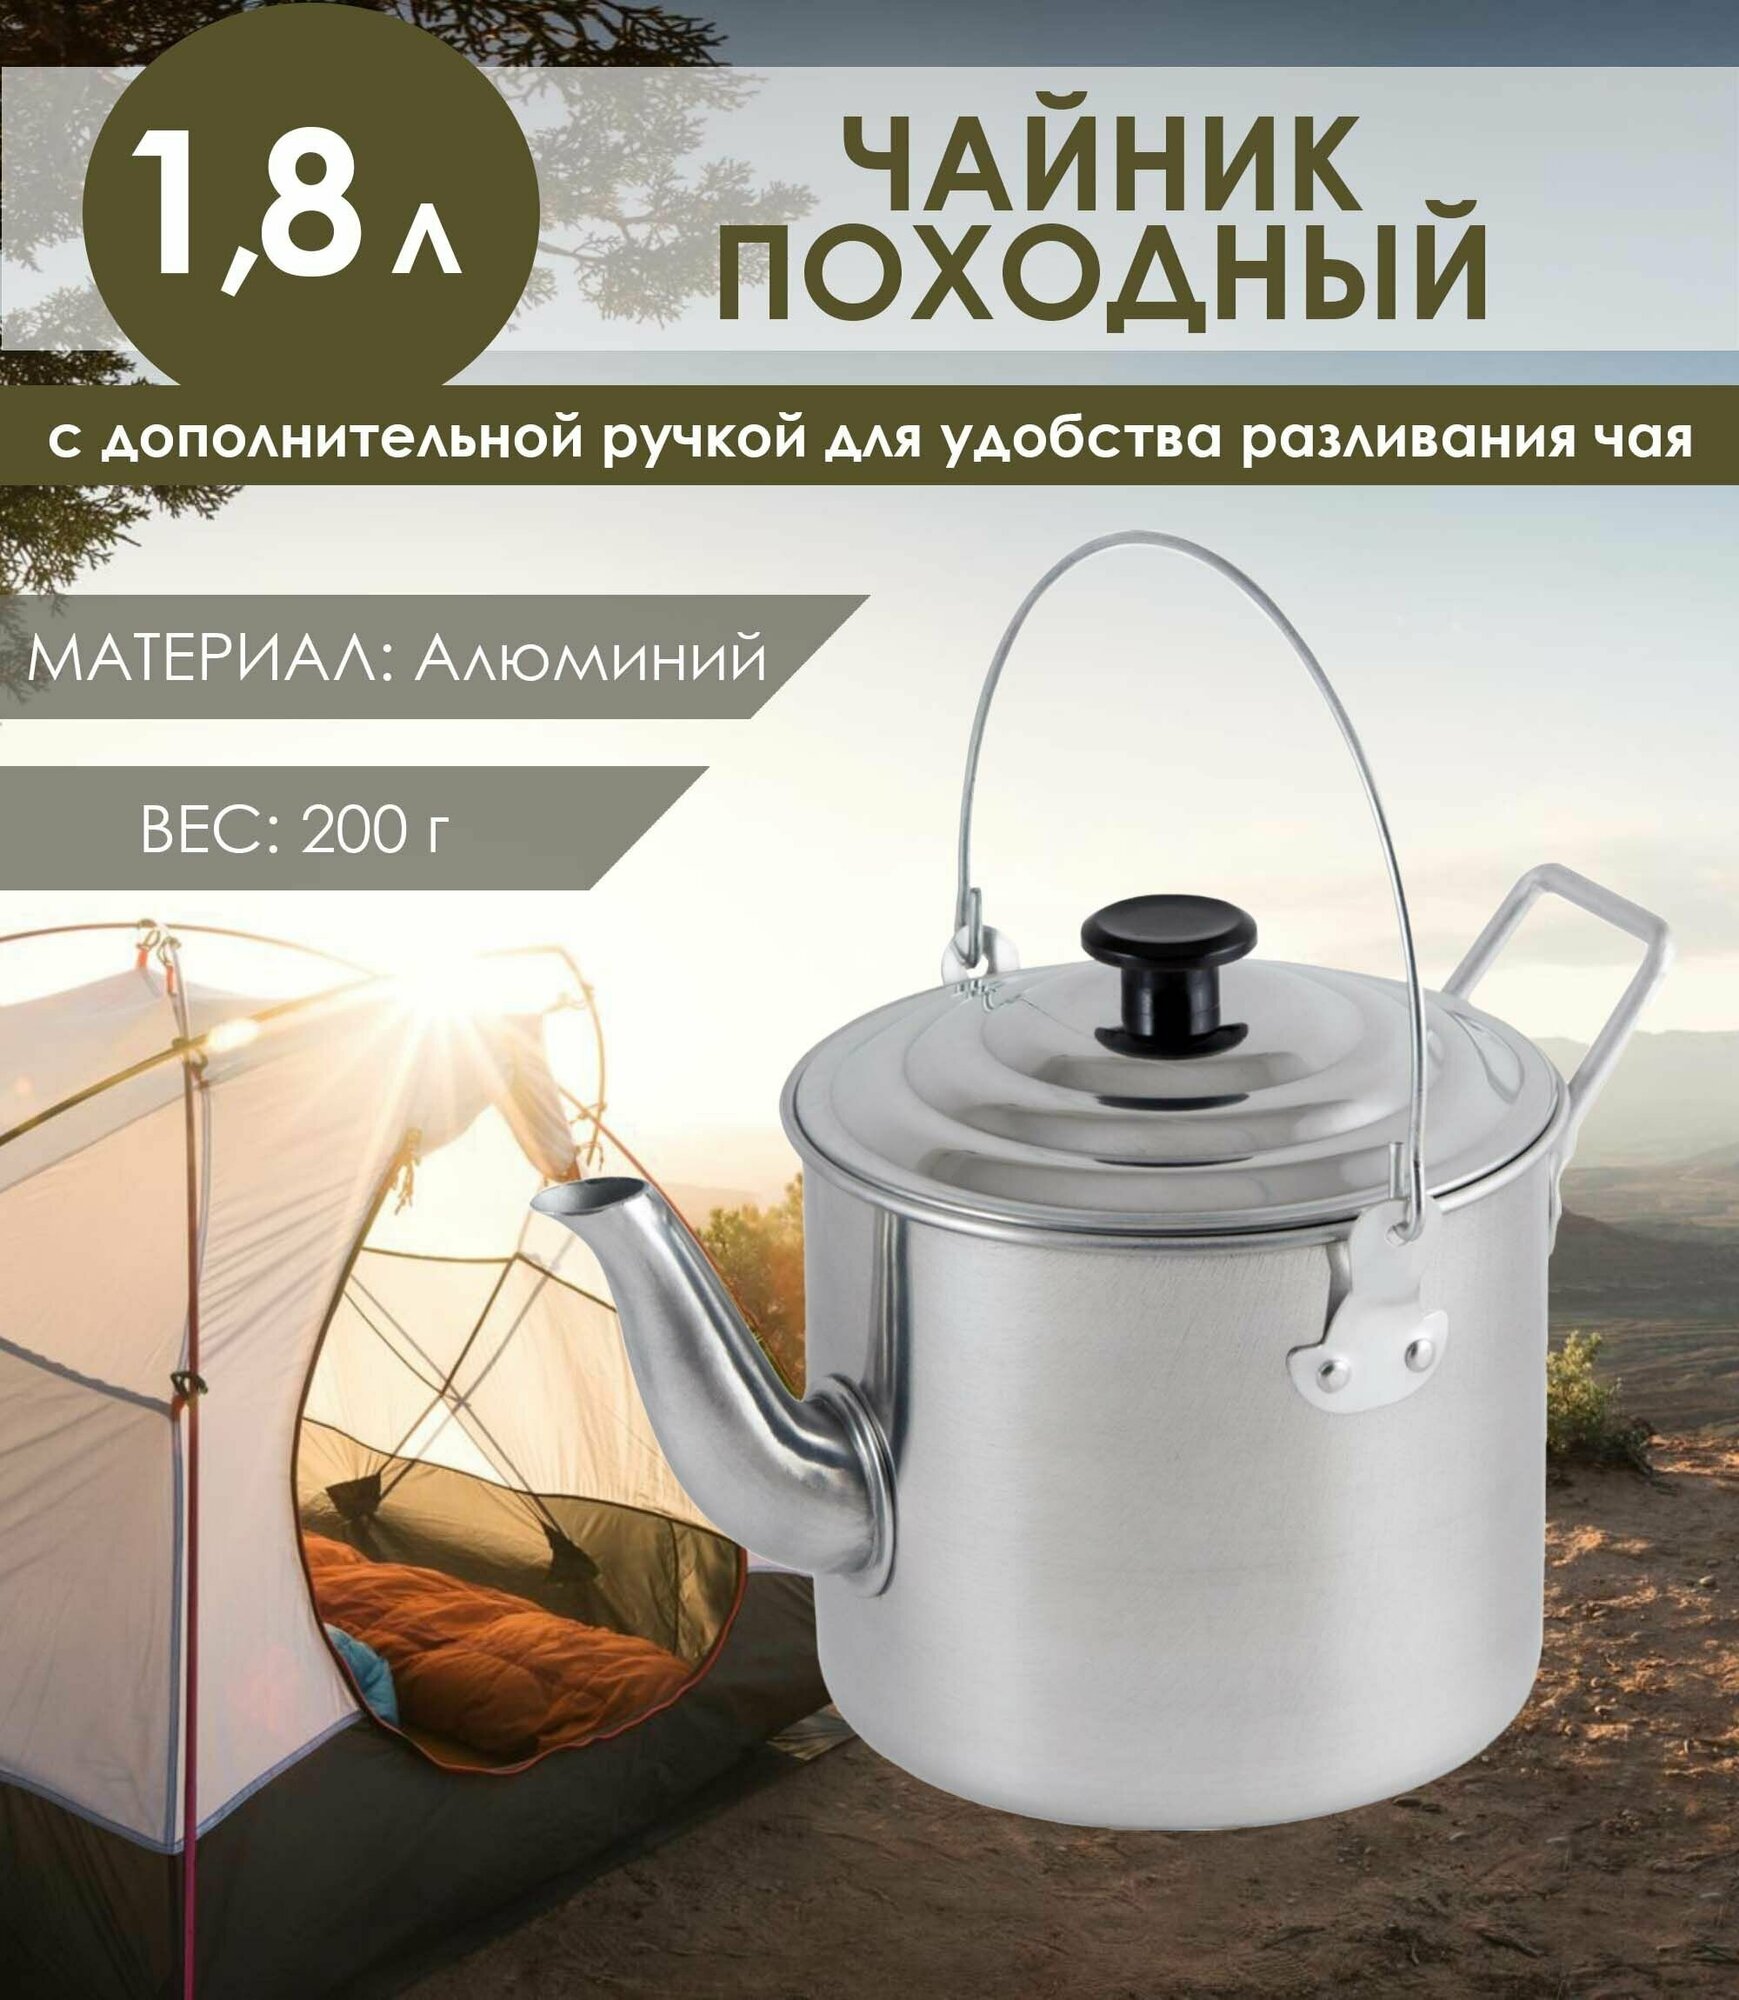 Чайник походный Ecos алюминиевый 1,8 л Camp -S4 - фото №7